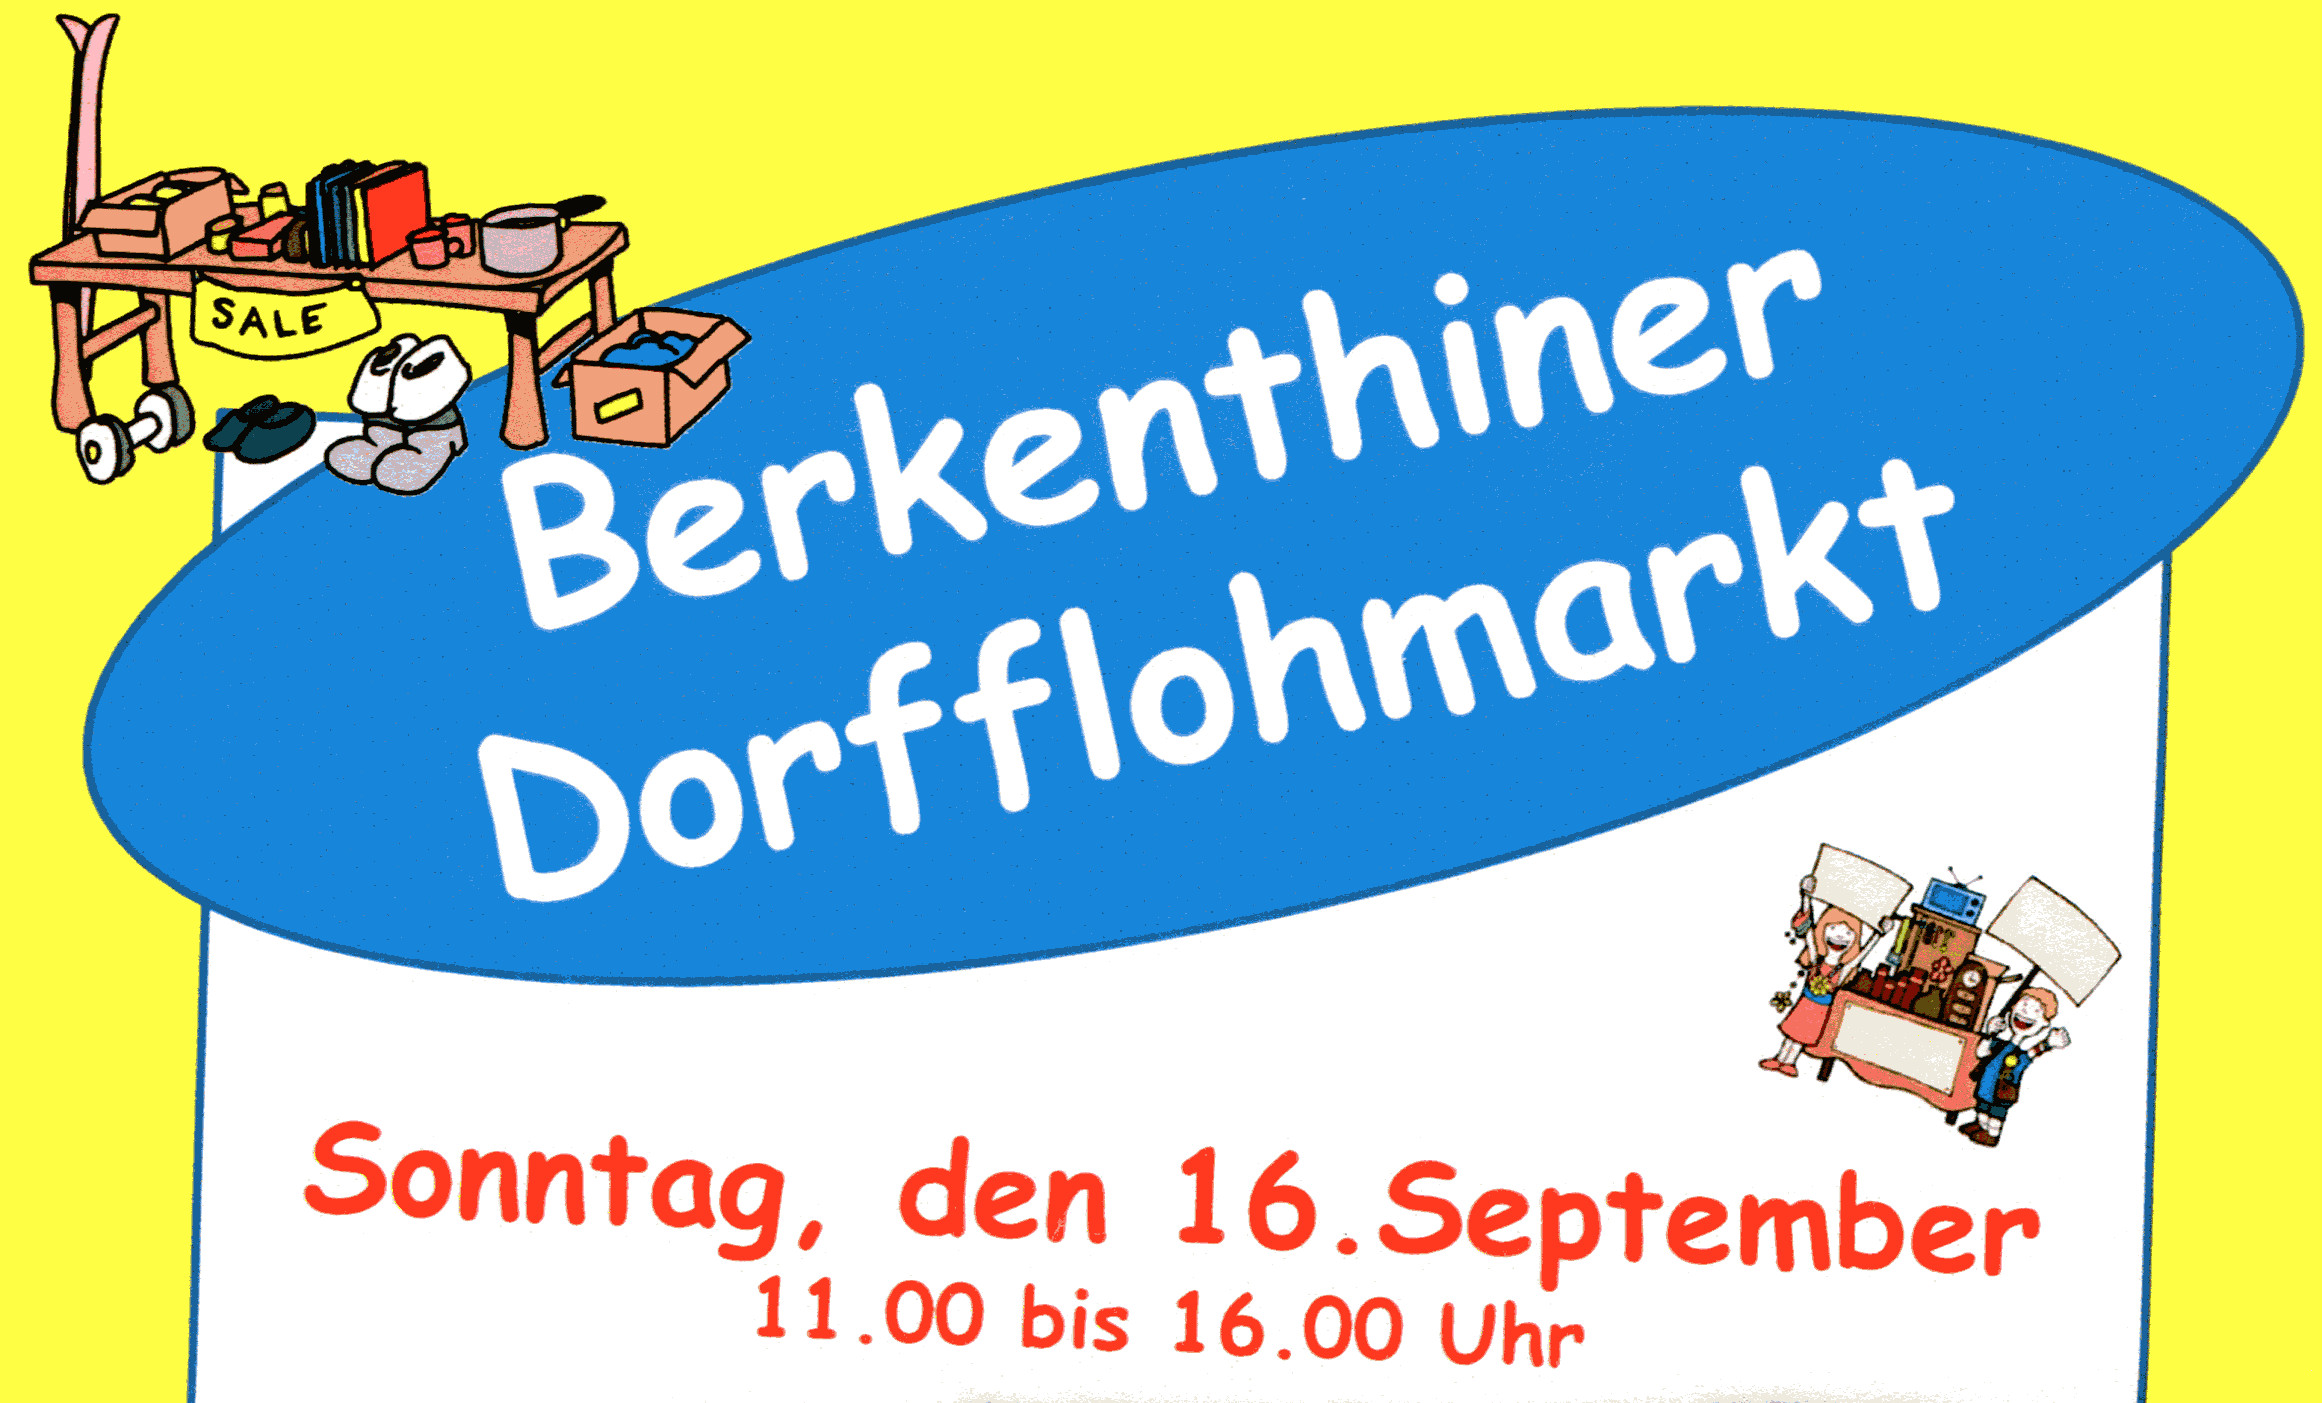 Berkenthiner Flohmarkt Am Sonntag, 16.09.2018